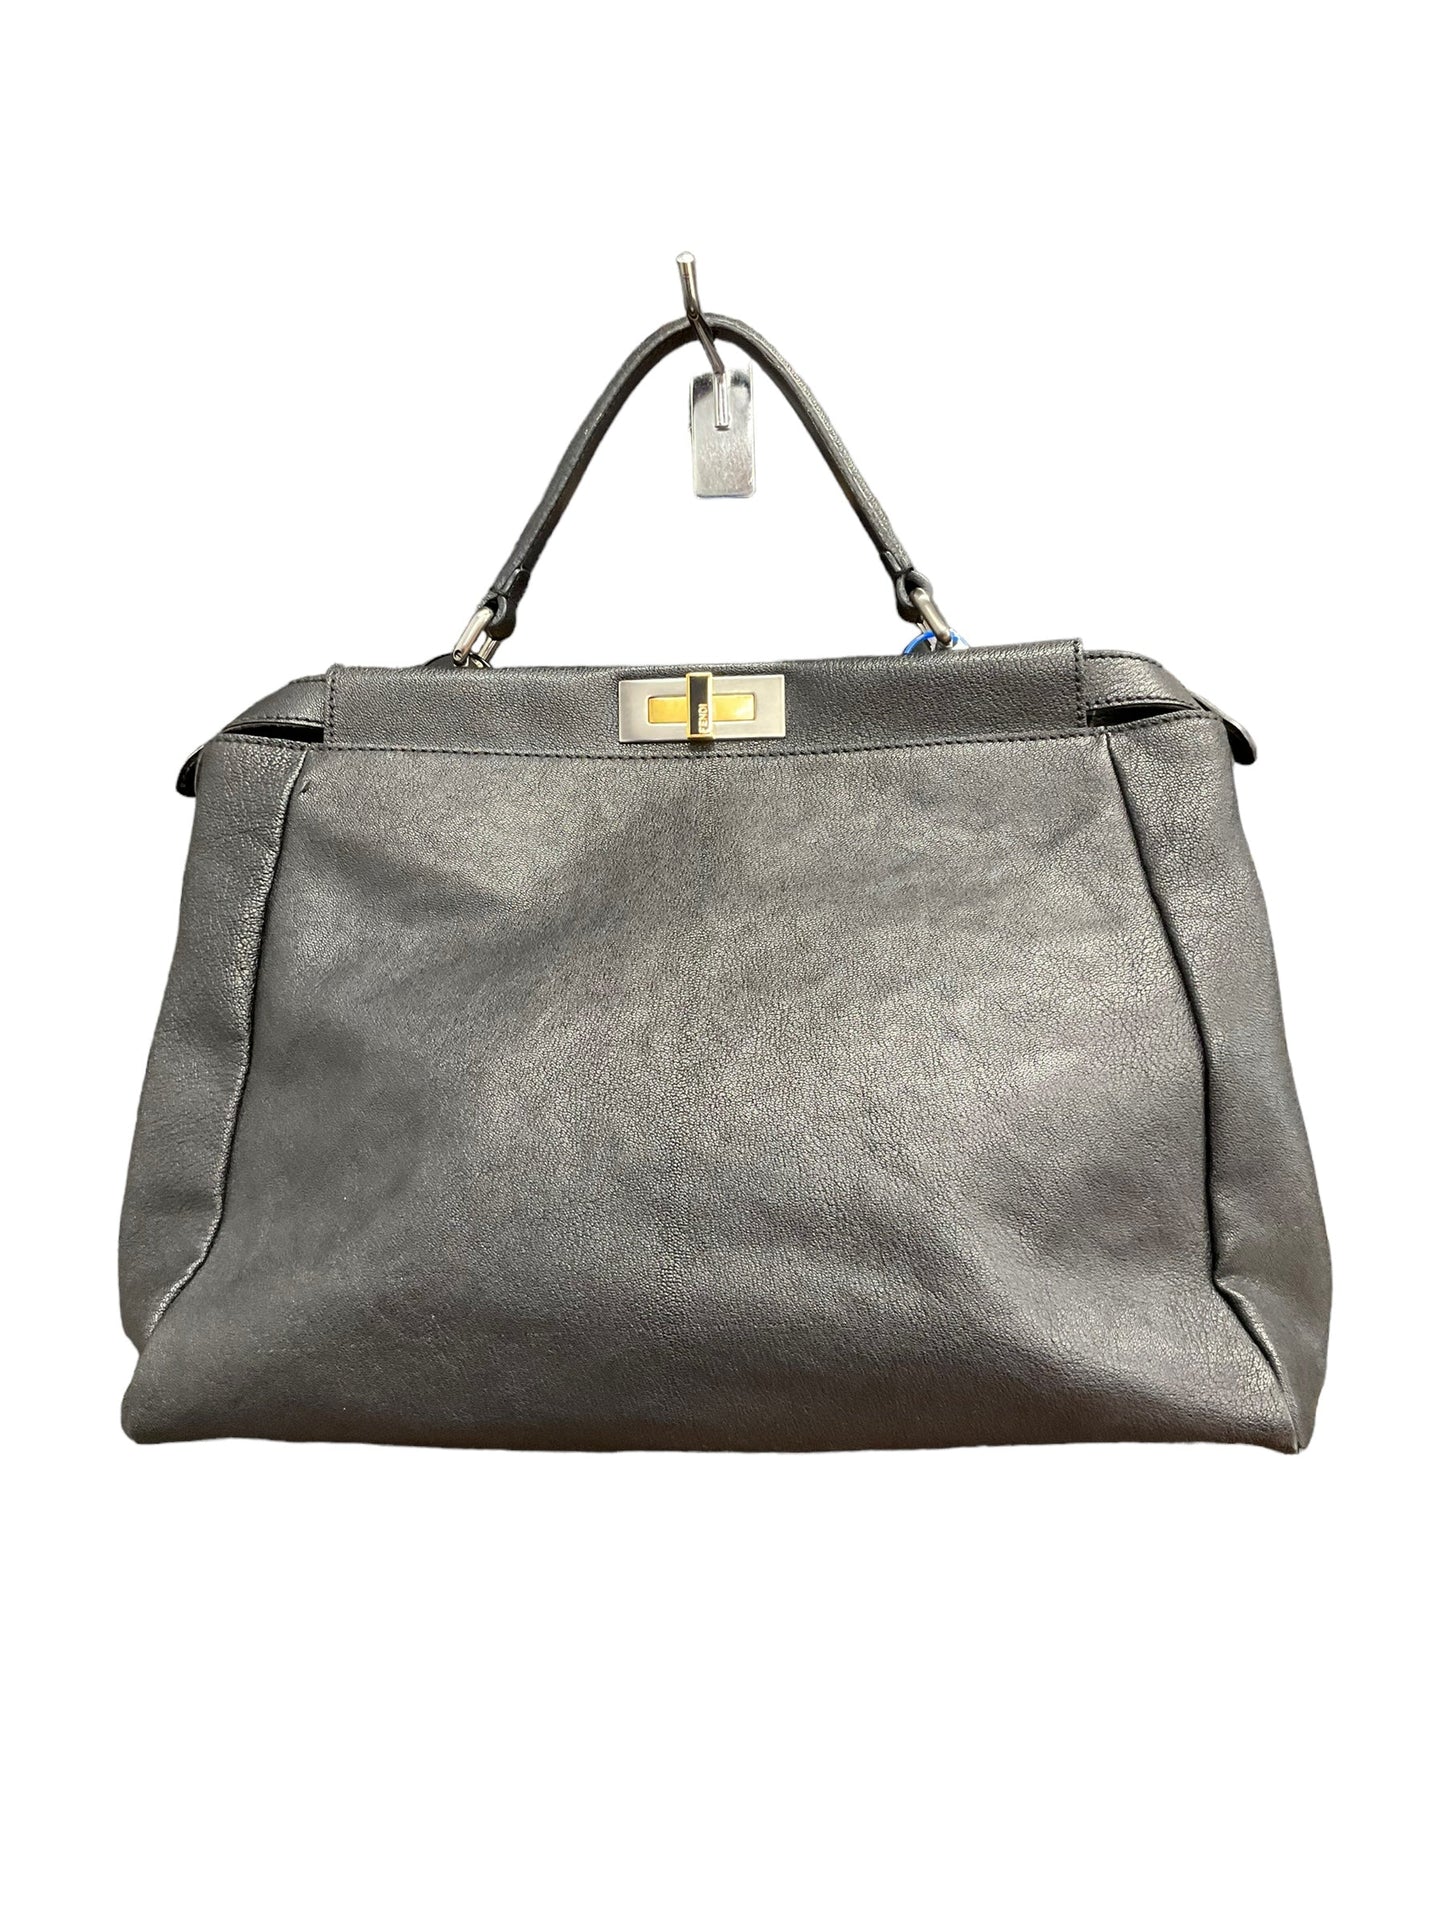 Handbag Luxury Designer By Fendi  Size: Large